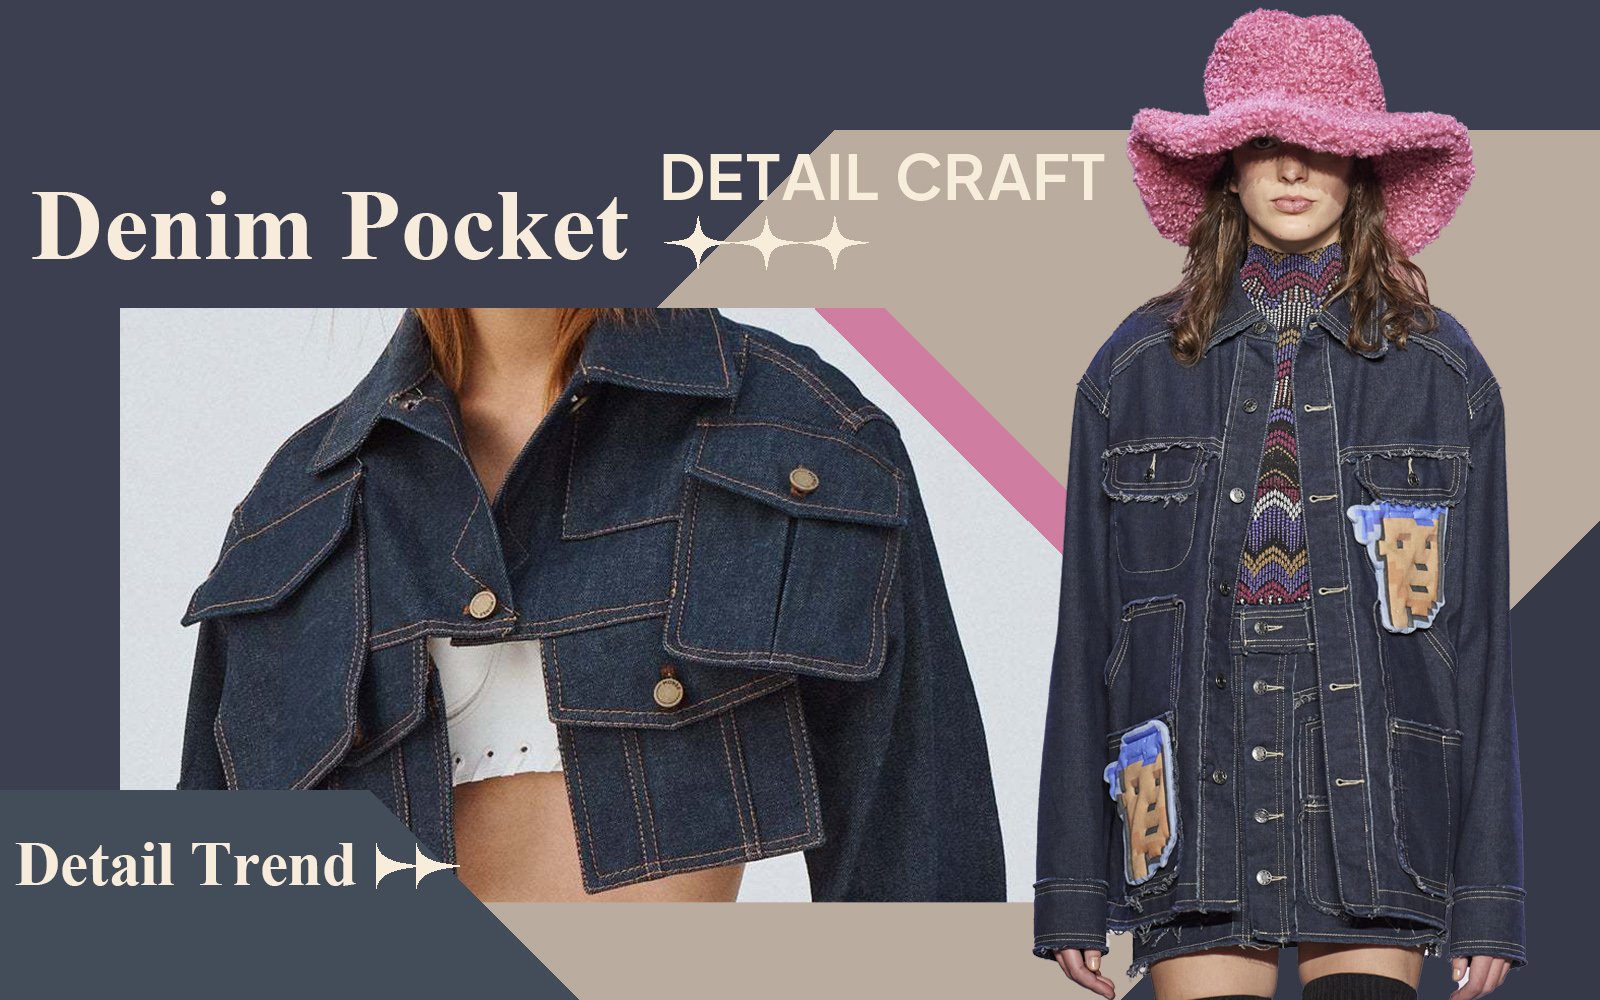 The Detail & Craft Trend for Denim Pocket